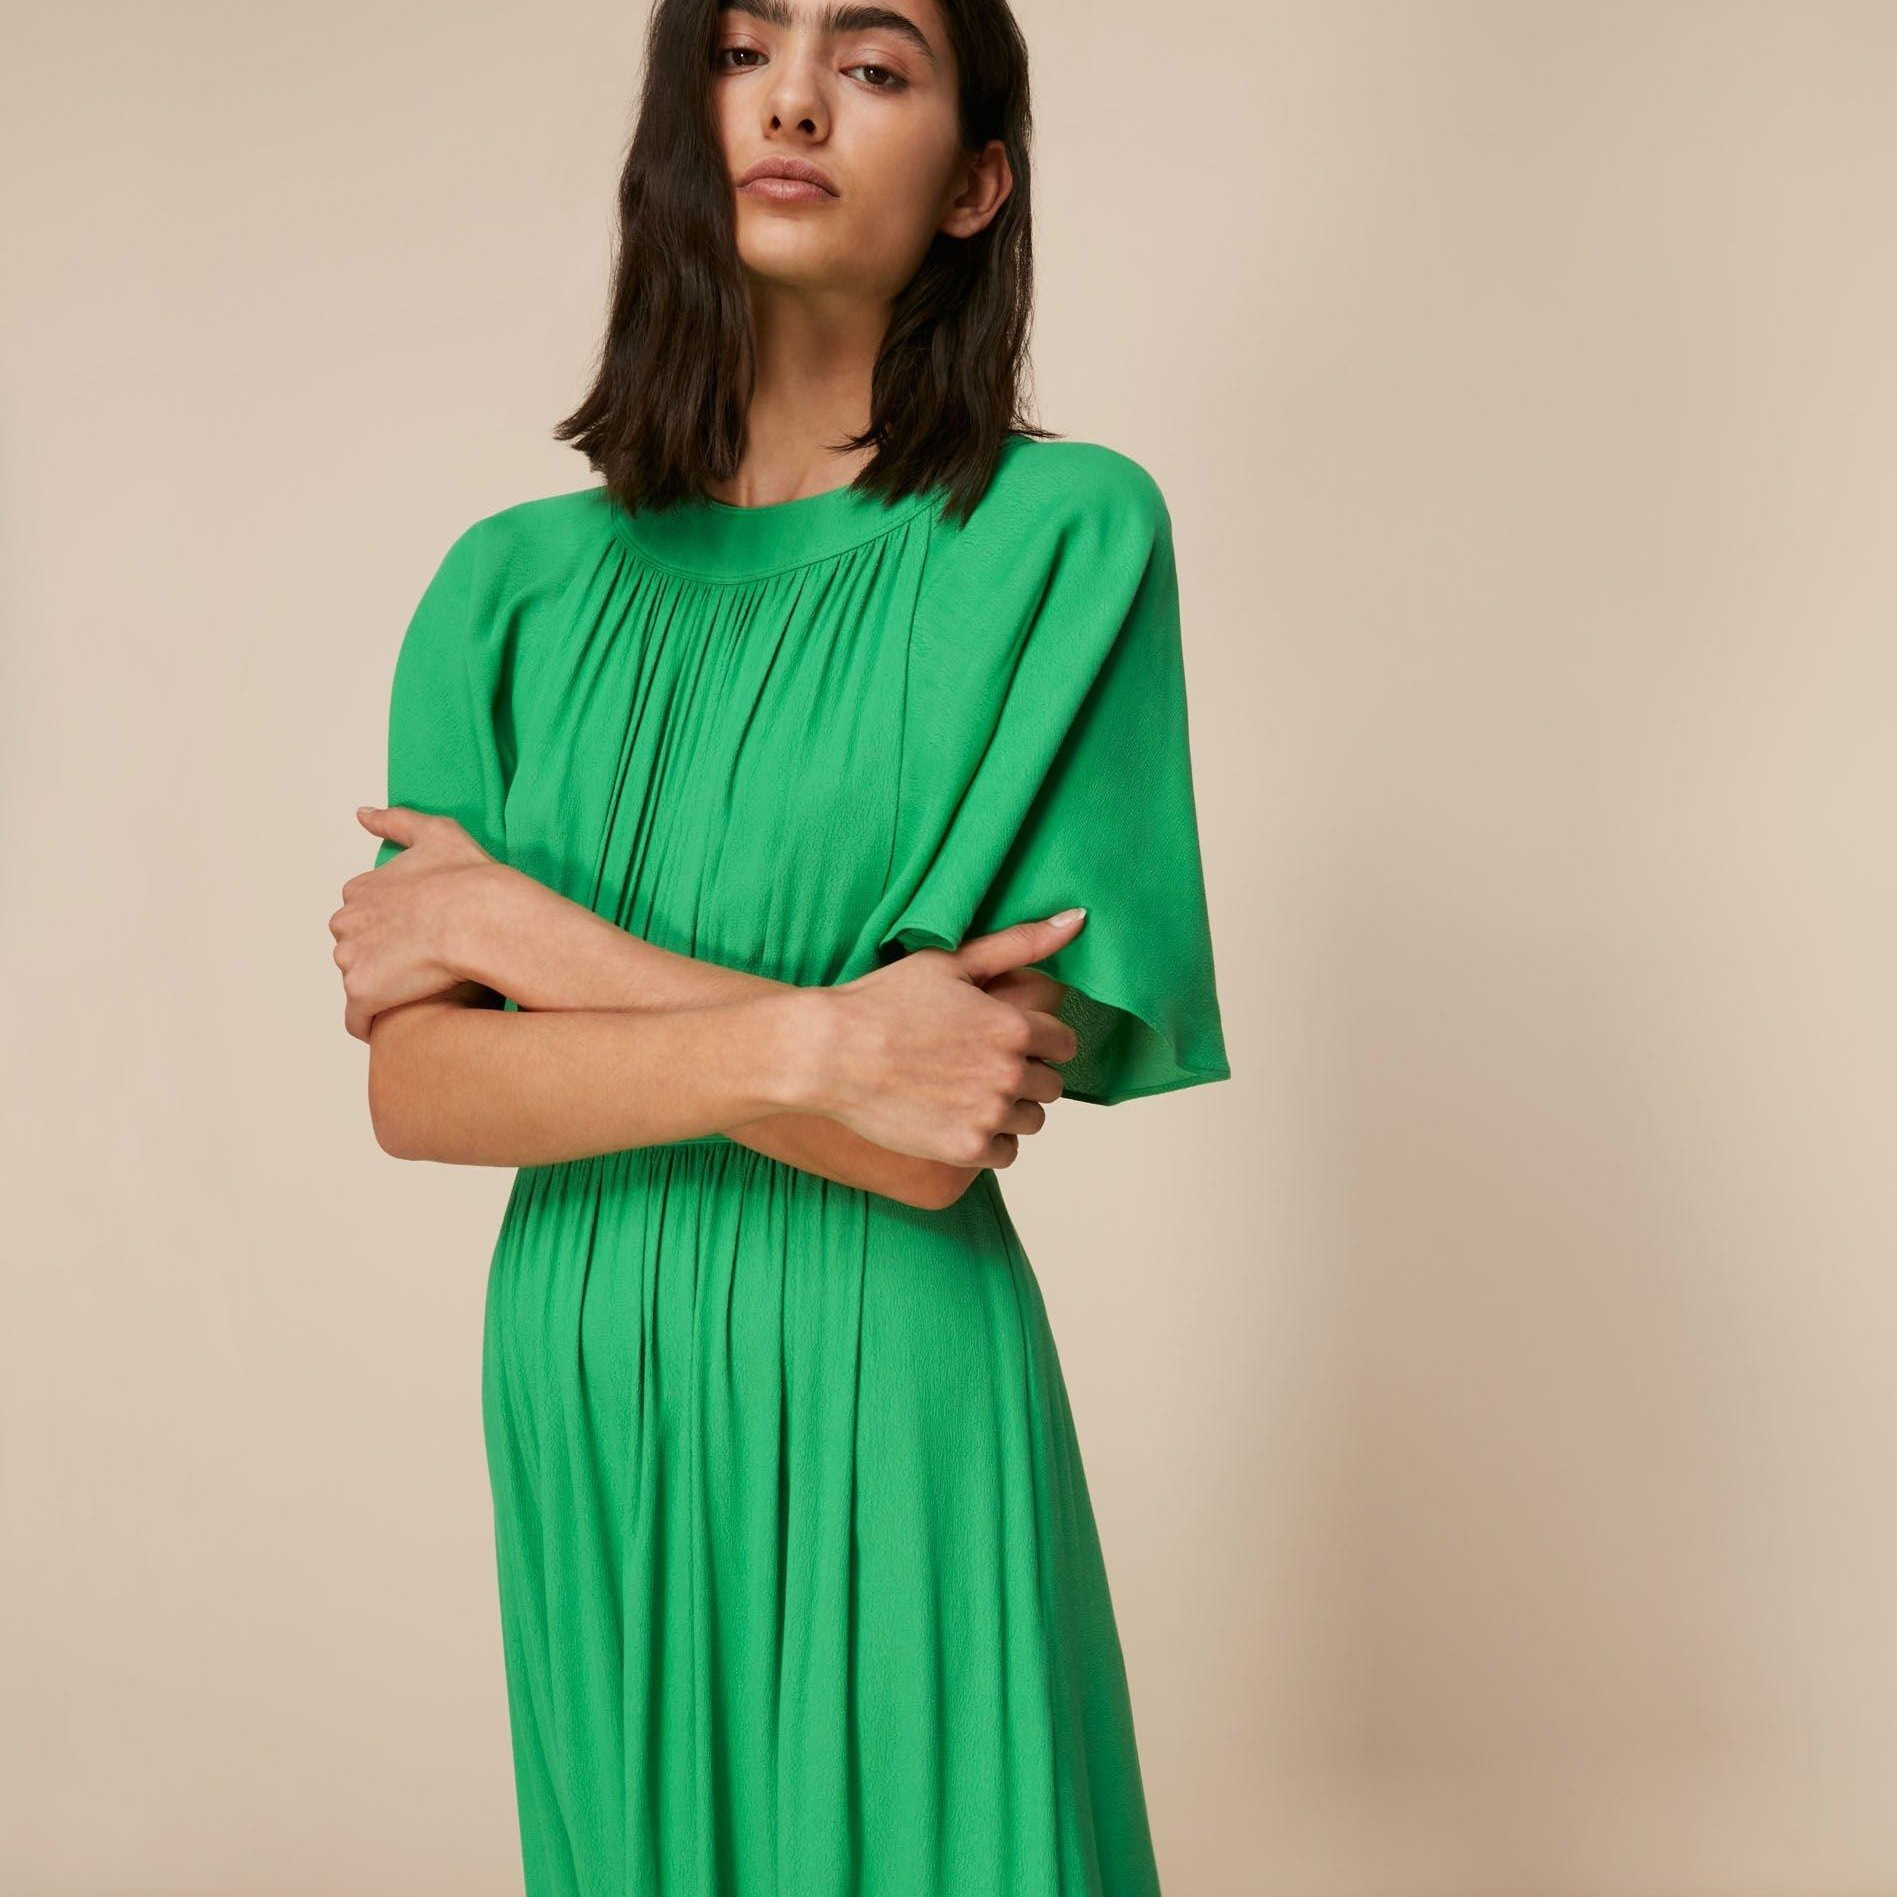 Зеленый цвет в одежде — самые выгодные сочетания